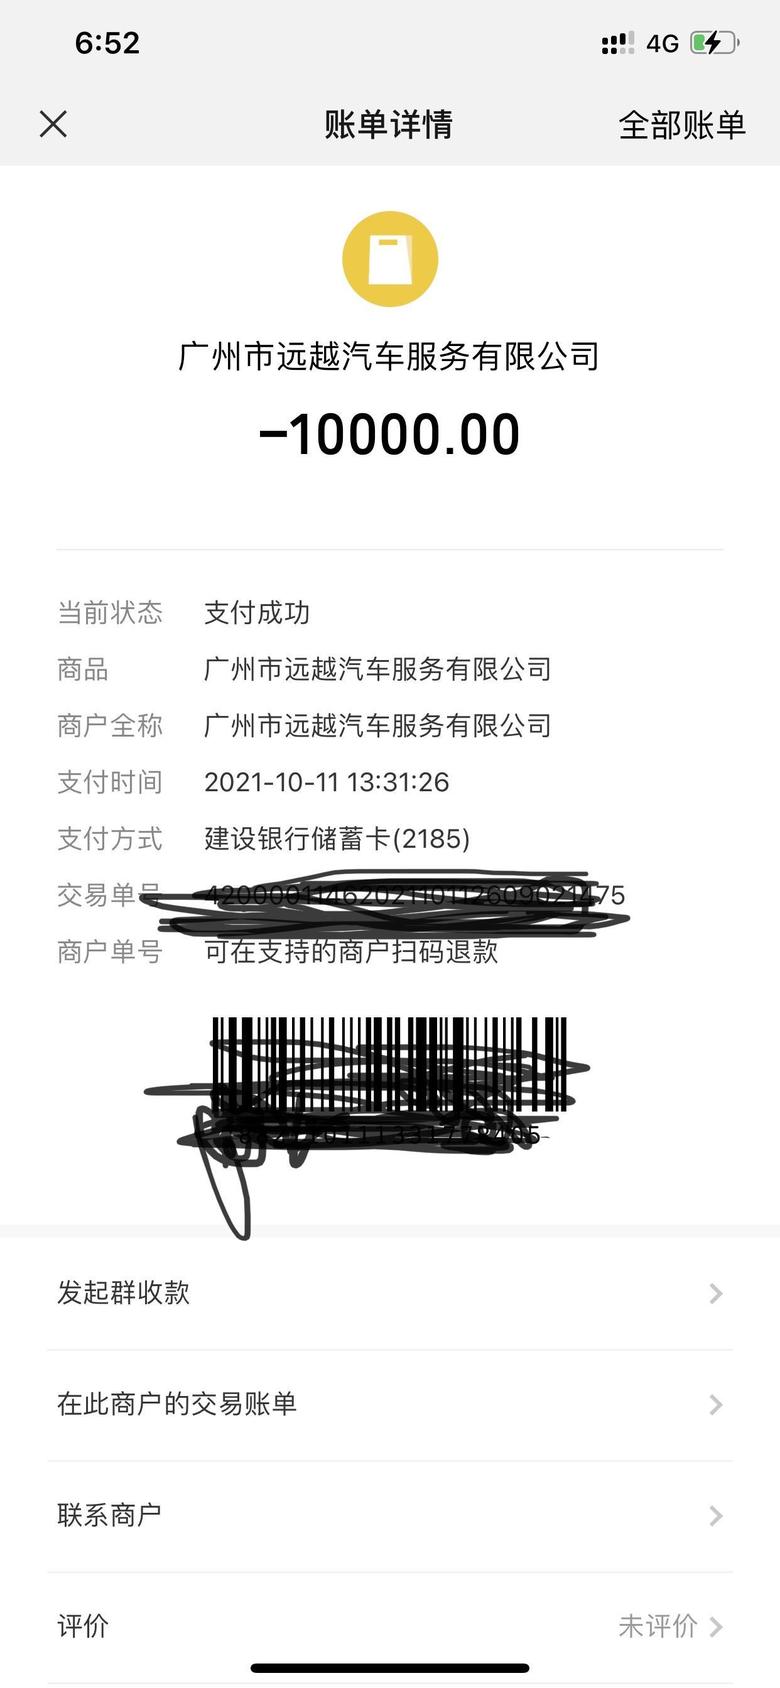 马自达3 昂克赛拉 坐标广州，黑色质睿+包，已下订等车中，有置换补贴4500，感谢@廣州MAZDA山本